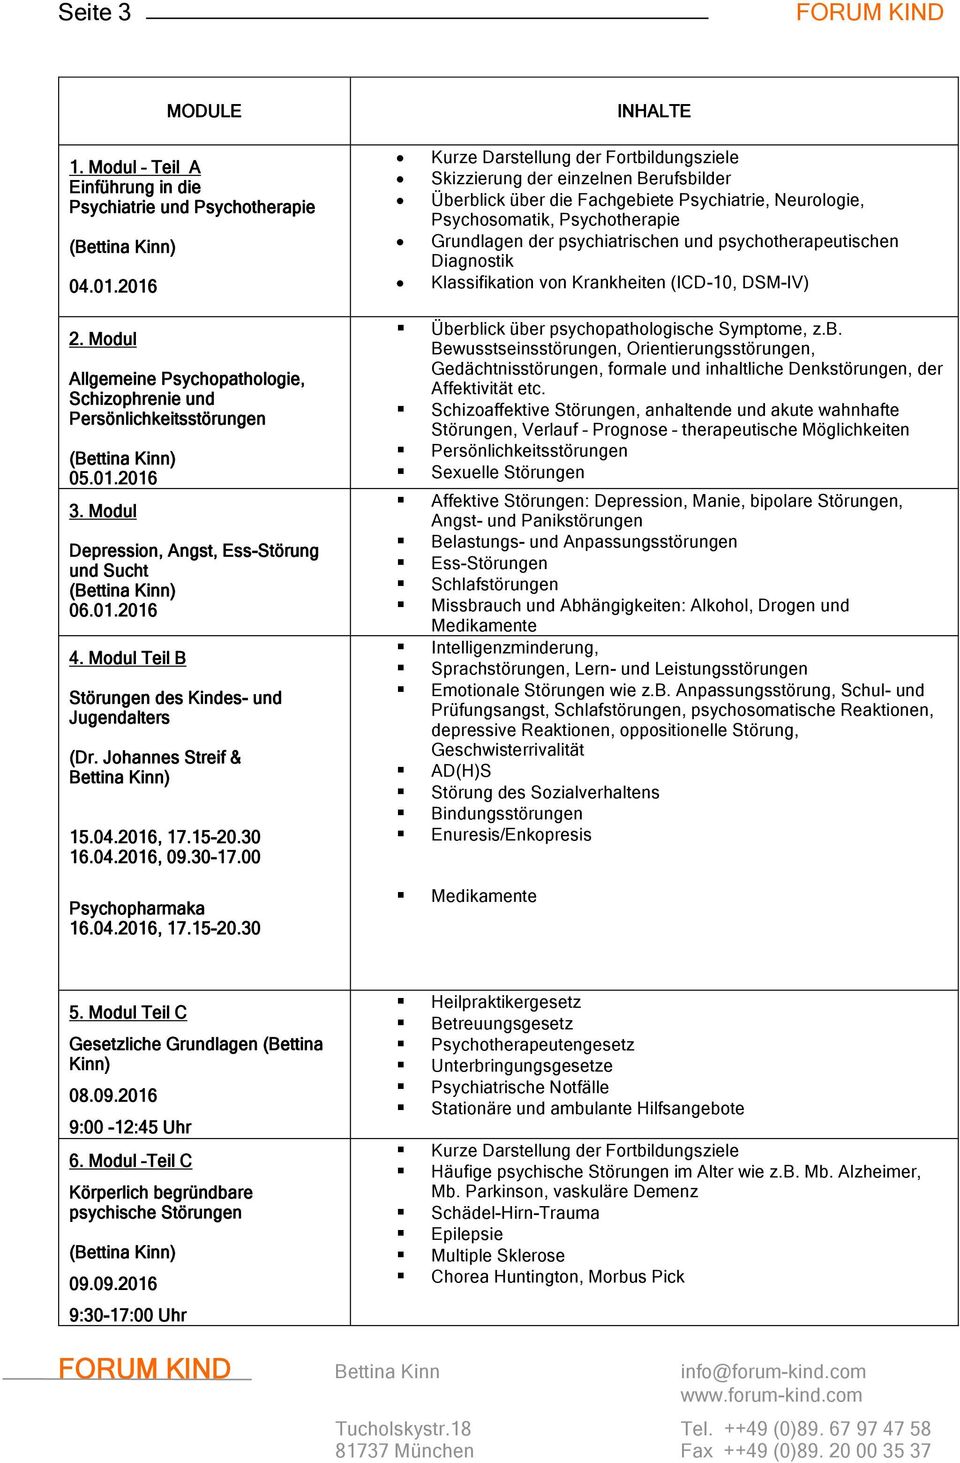 psychiatrischen und psychotherapeutischen Diagnostik Klassifikation von Krankheiten (ICD-10, DSM-IV) 2. Modul Allgemeine Psychopathologie, Schizophrenie und Persönlichkeitsstörungen 05.01.2016 3.